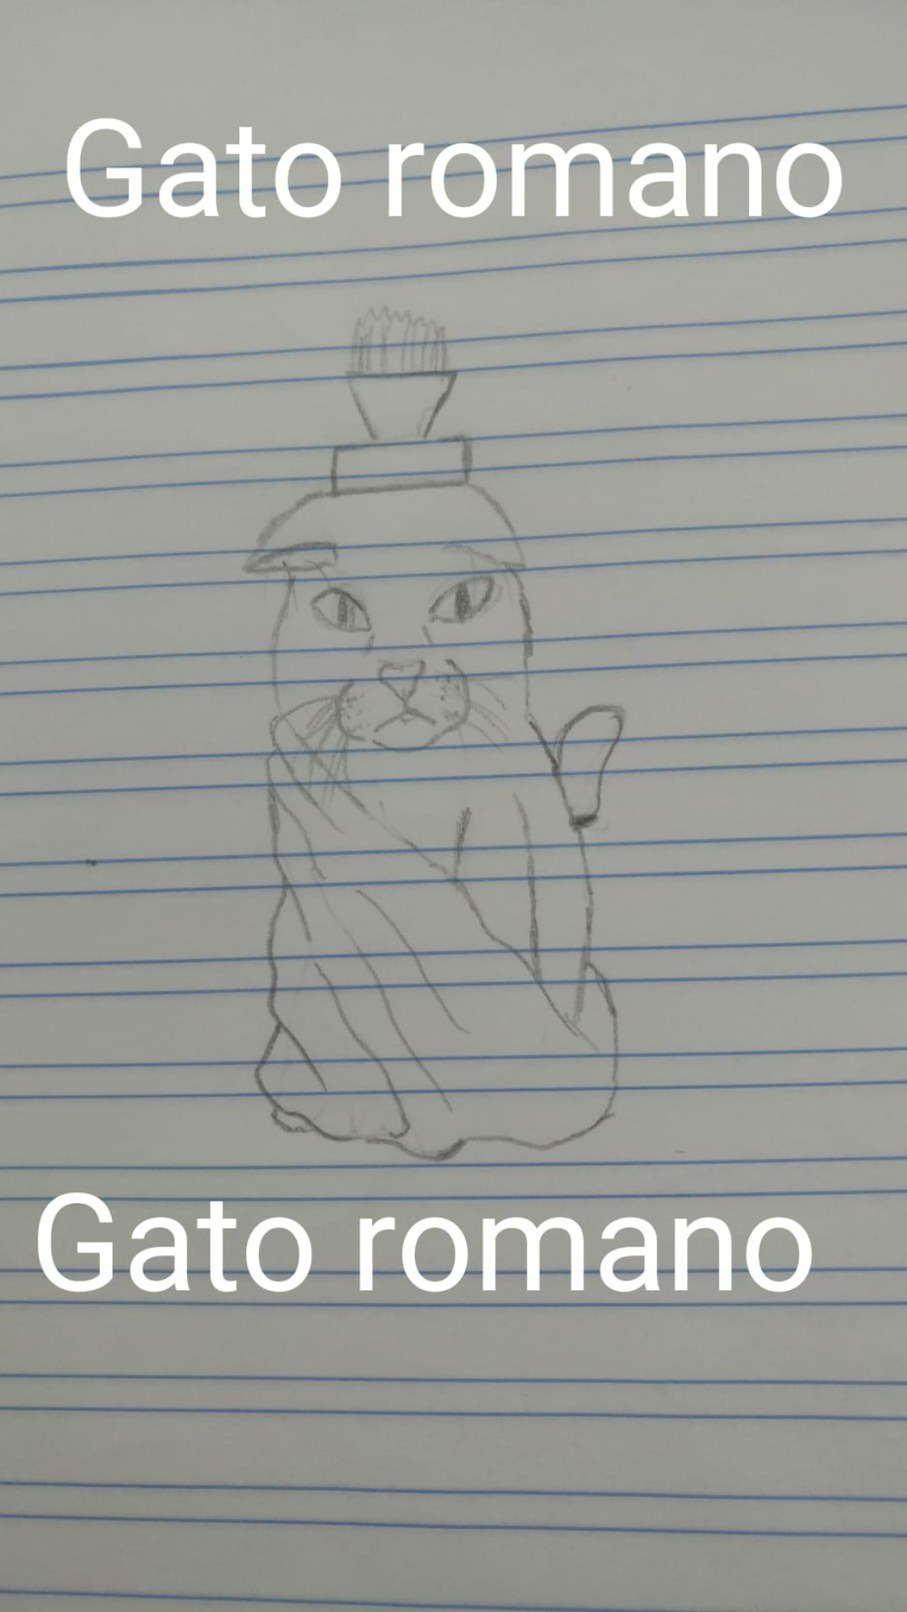 Gato romano - meme